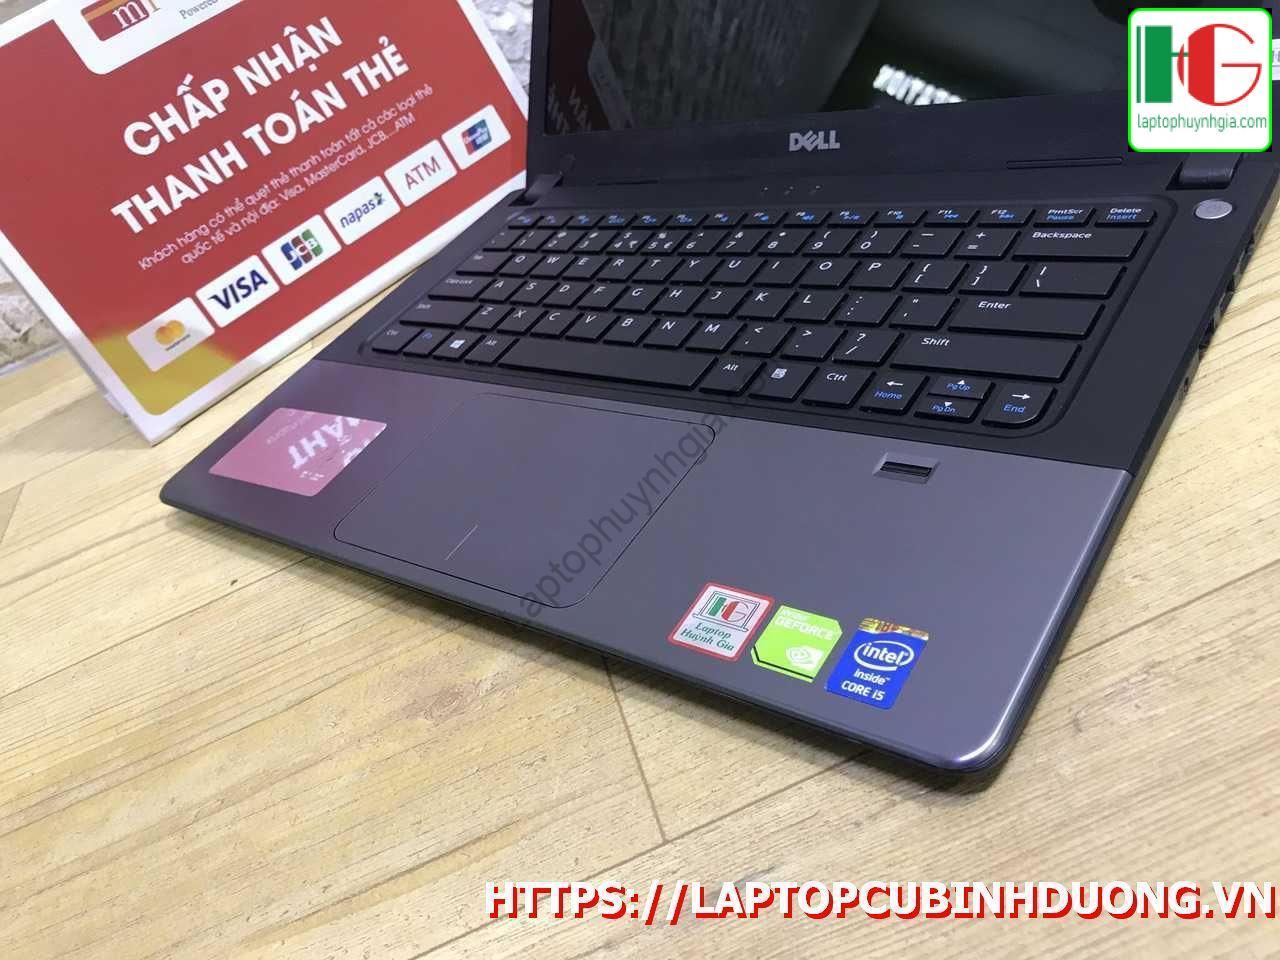 Laptop Dell V5470 I5 4210u 4g Ssd 128g Nvidia Gt820m Laptopcubinhduong.vn 4 [kích Thước Gốc] Result